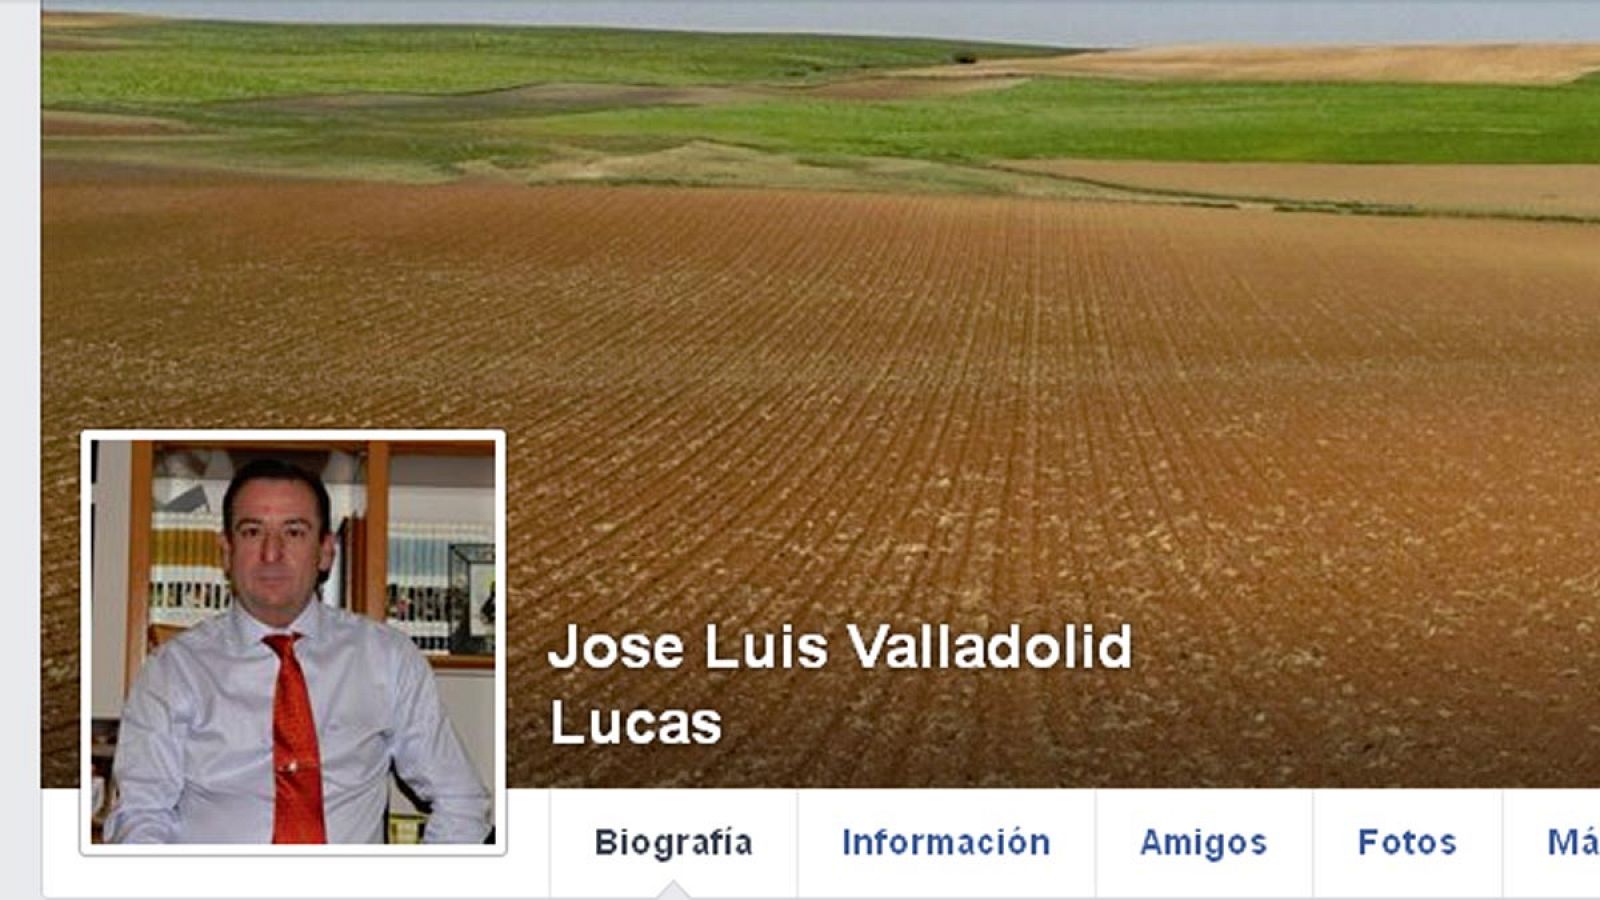 Imagen del perfil en Facebook del alcalde de Villares del Saz, José Luis Valladolid